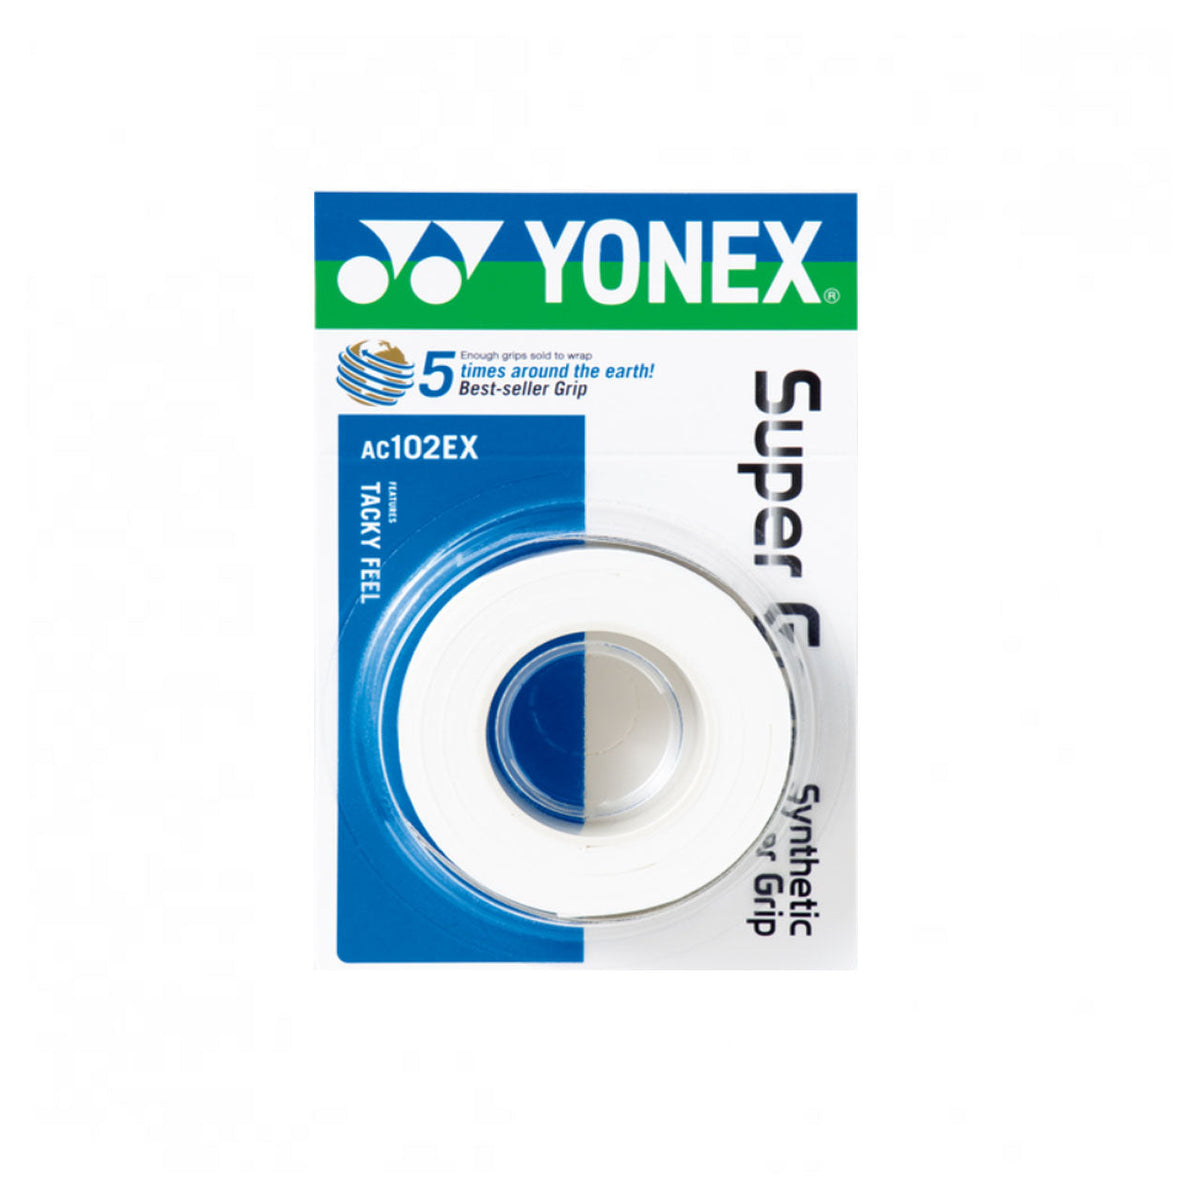 Yonex AC102EX Super Grap (3 Pieces)